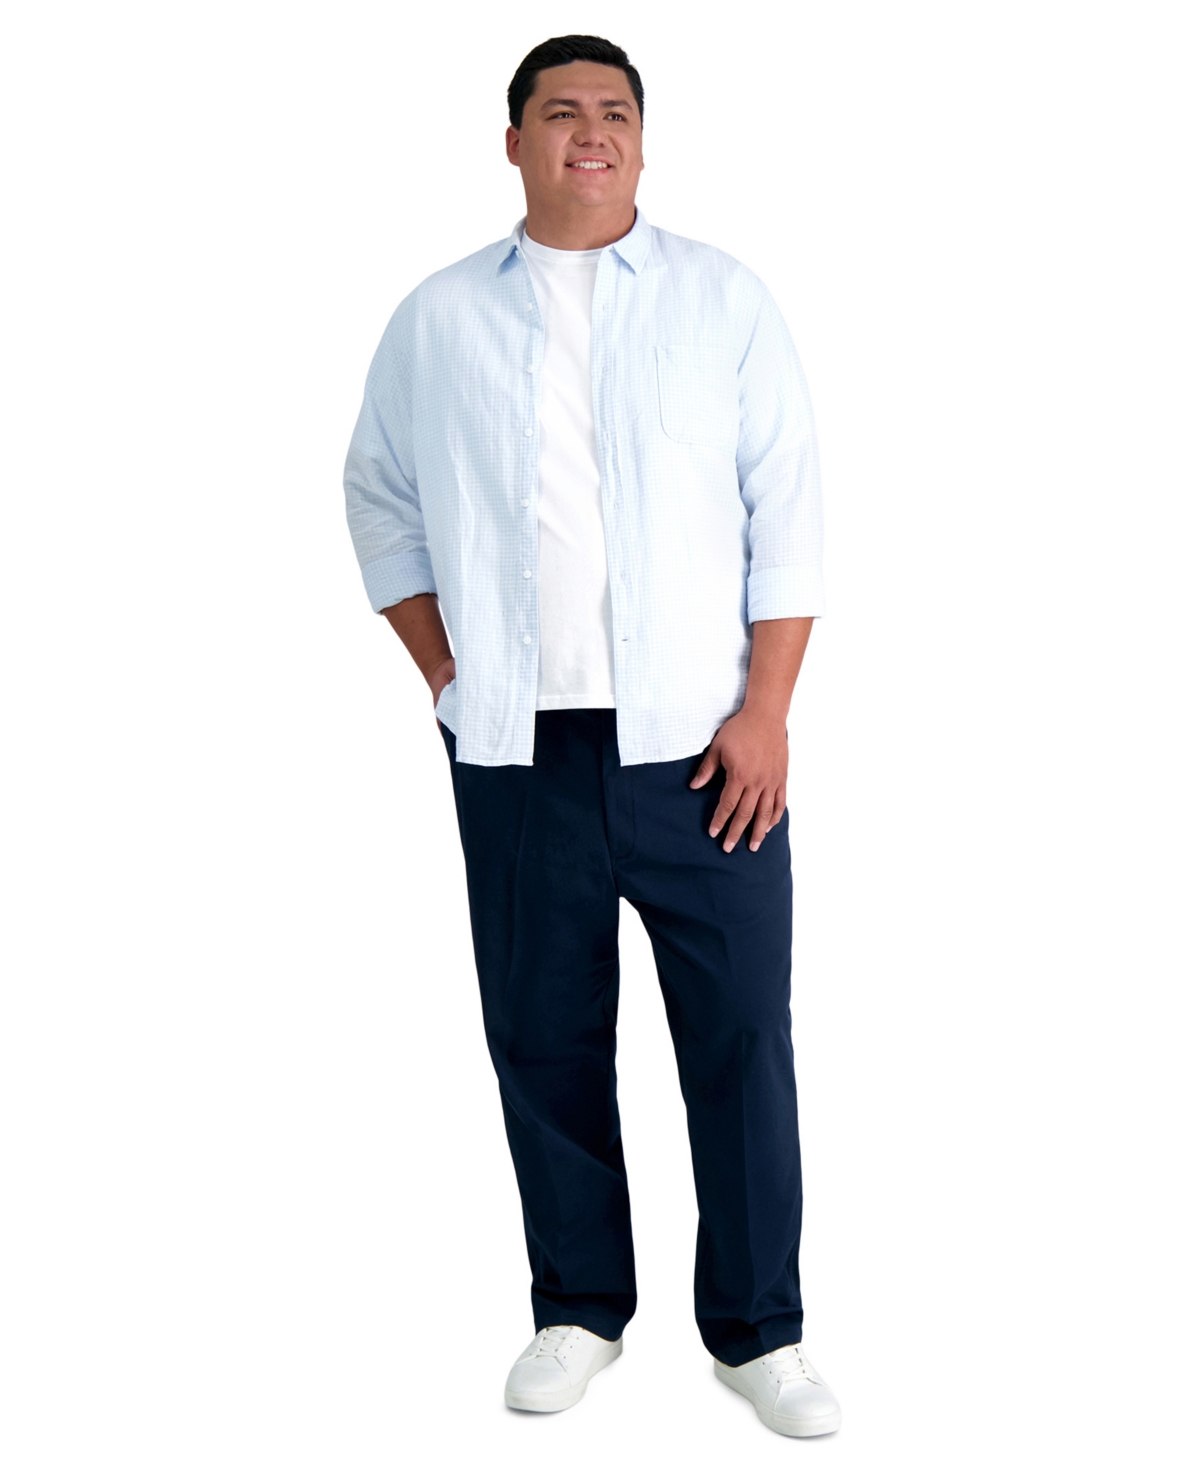 Men's Big & Tall Classic-Fit Khaki Pants - Med Khaki